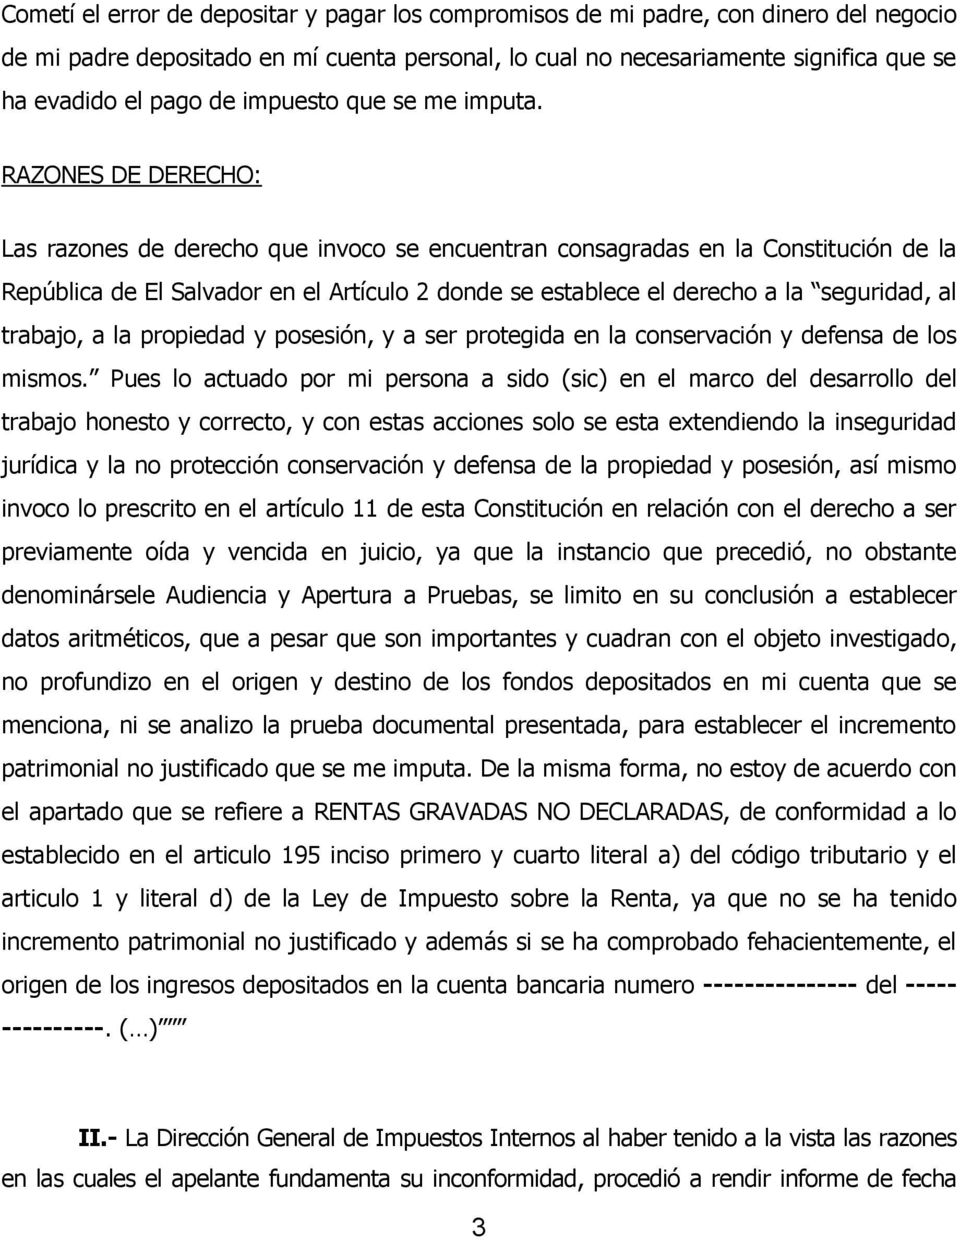 RAZONES DE DERECHO: Las razones de derecho que invoco se encuentran consagradas en la Constitución de la República de El Salvador en el Artículo 2 donde se establece el derecho a la seguridad, al